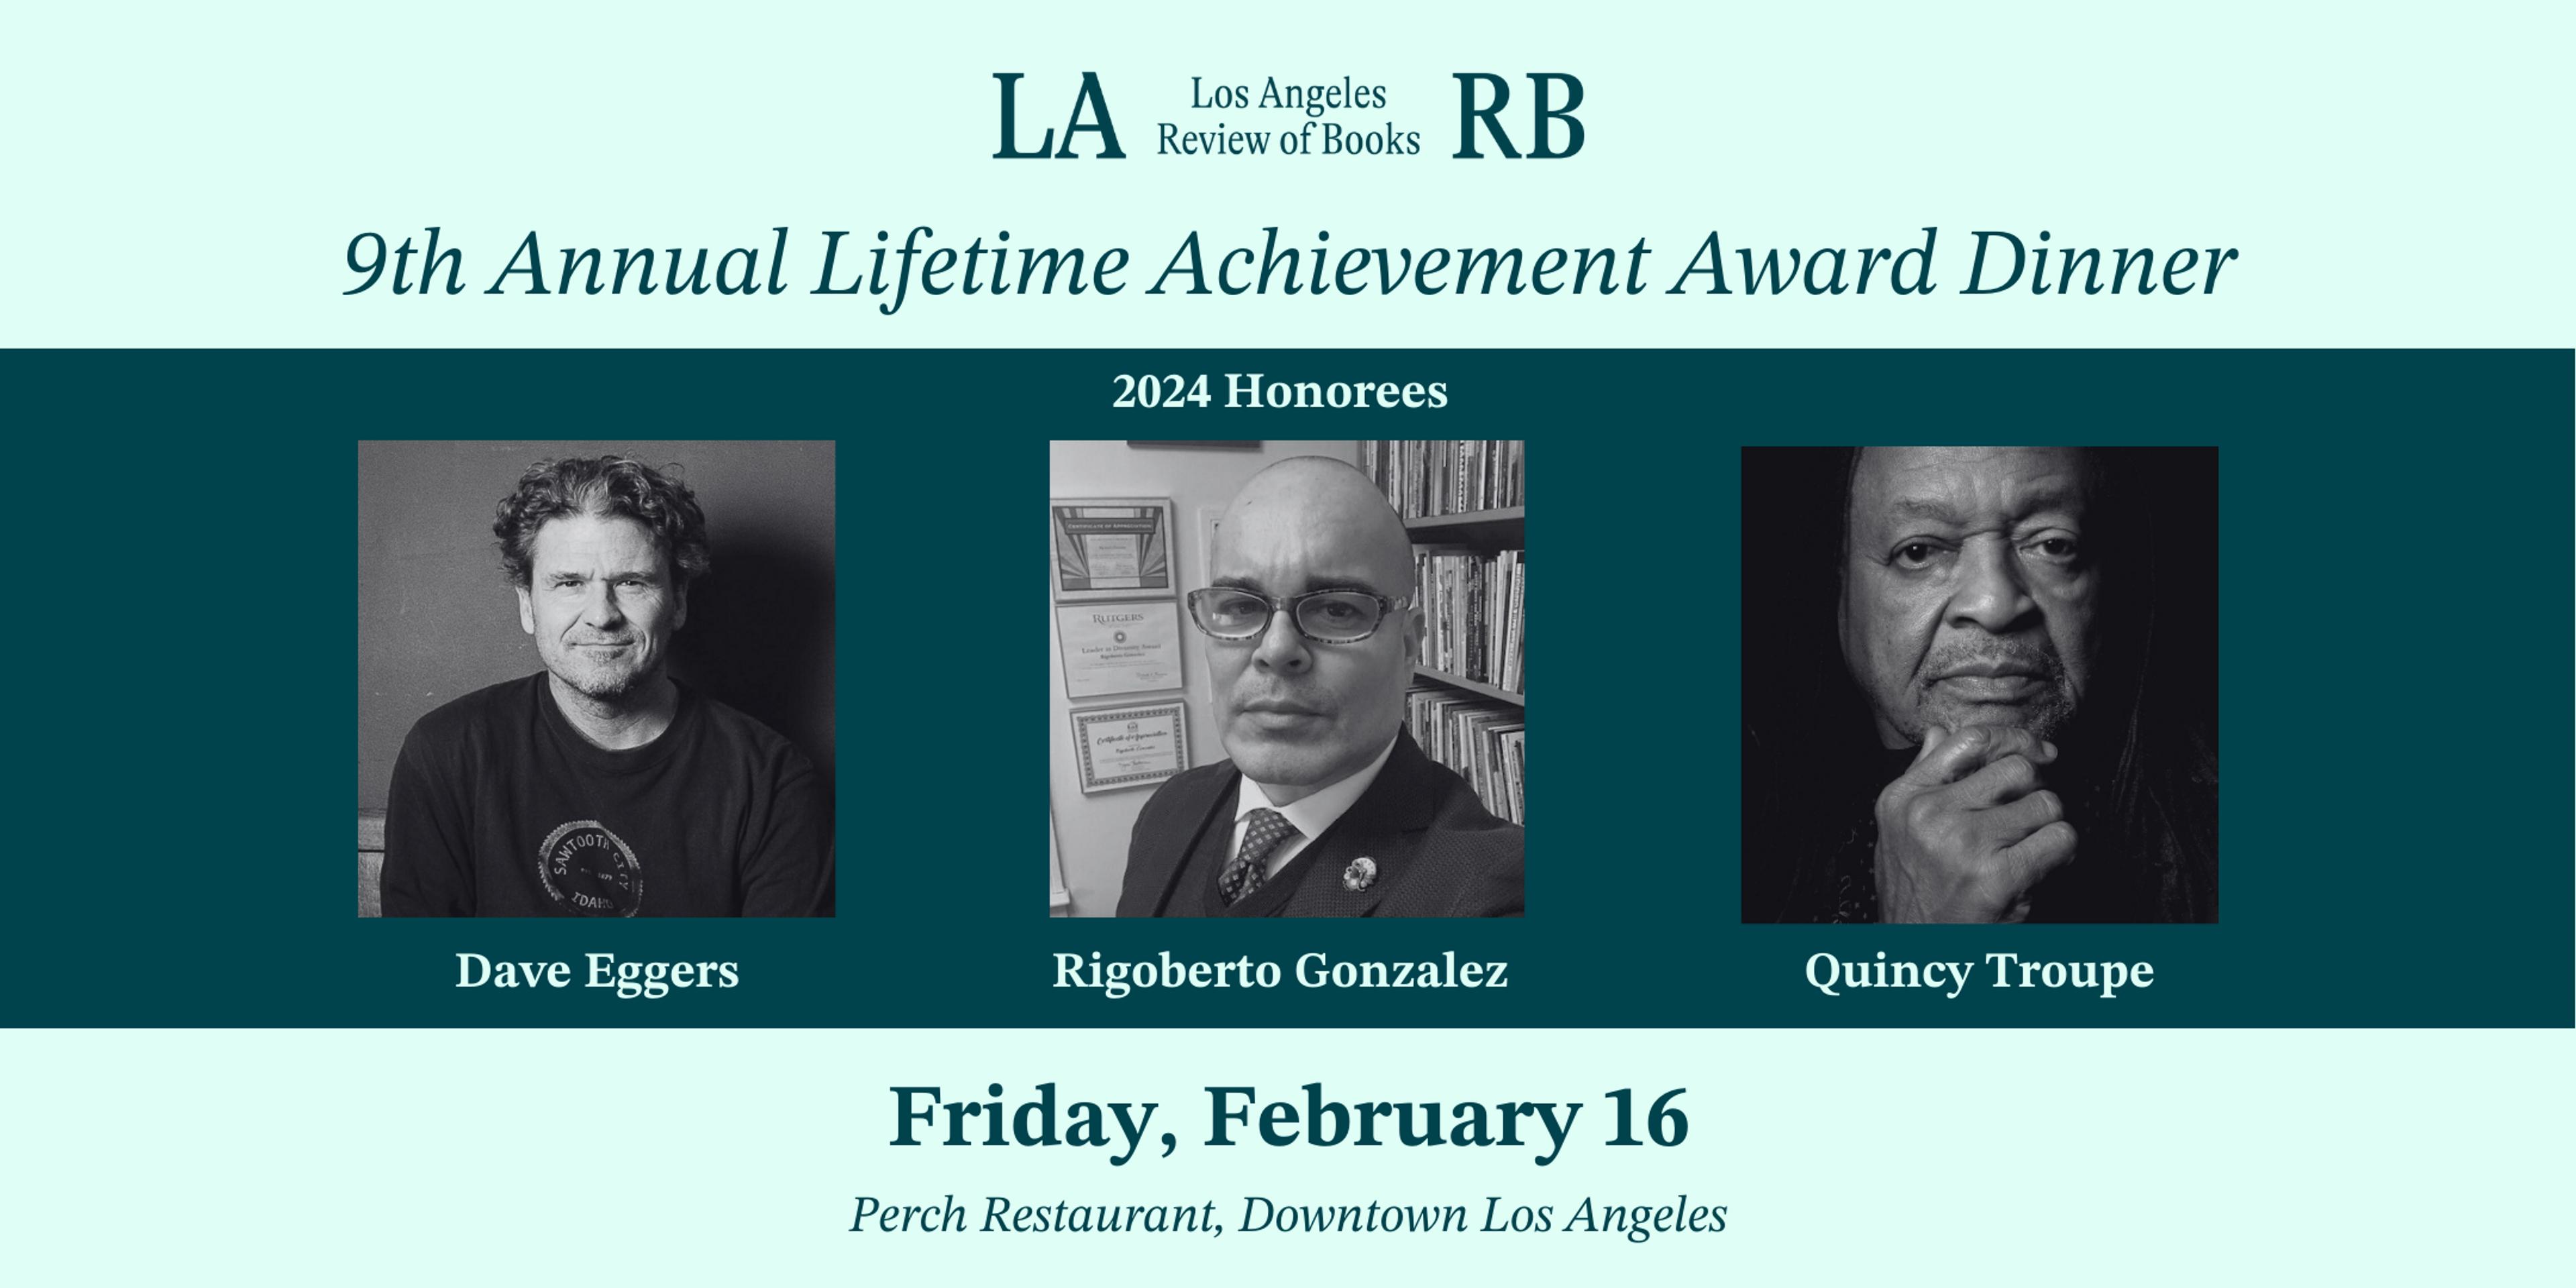 9th Annual Lifetime Achievement Award